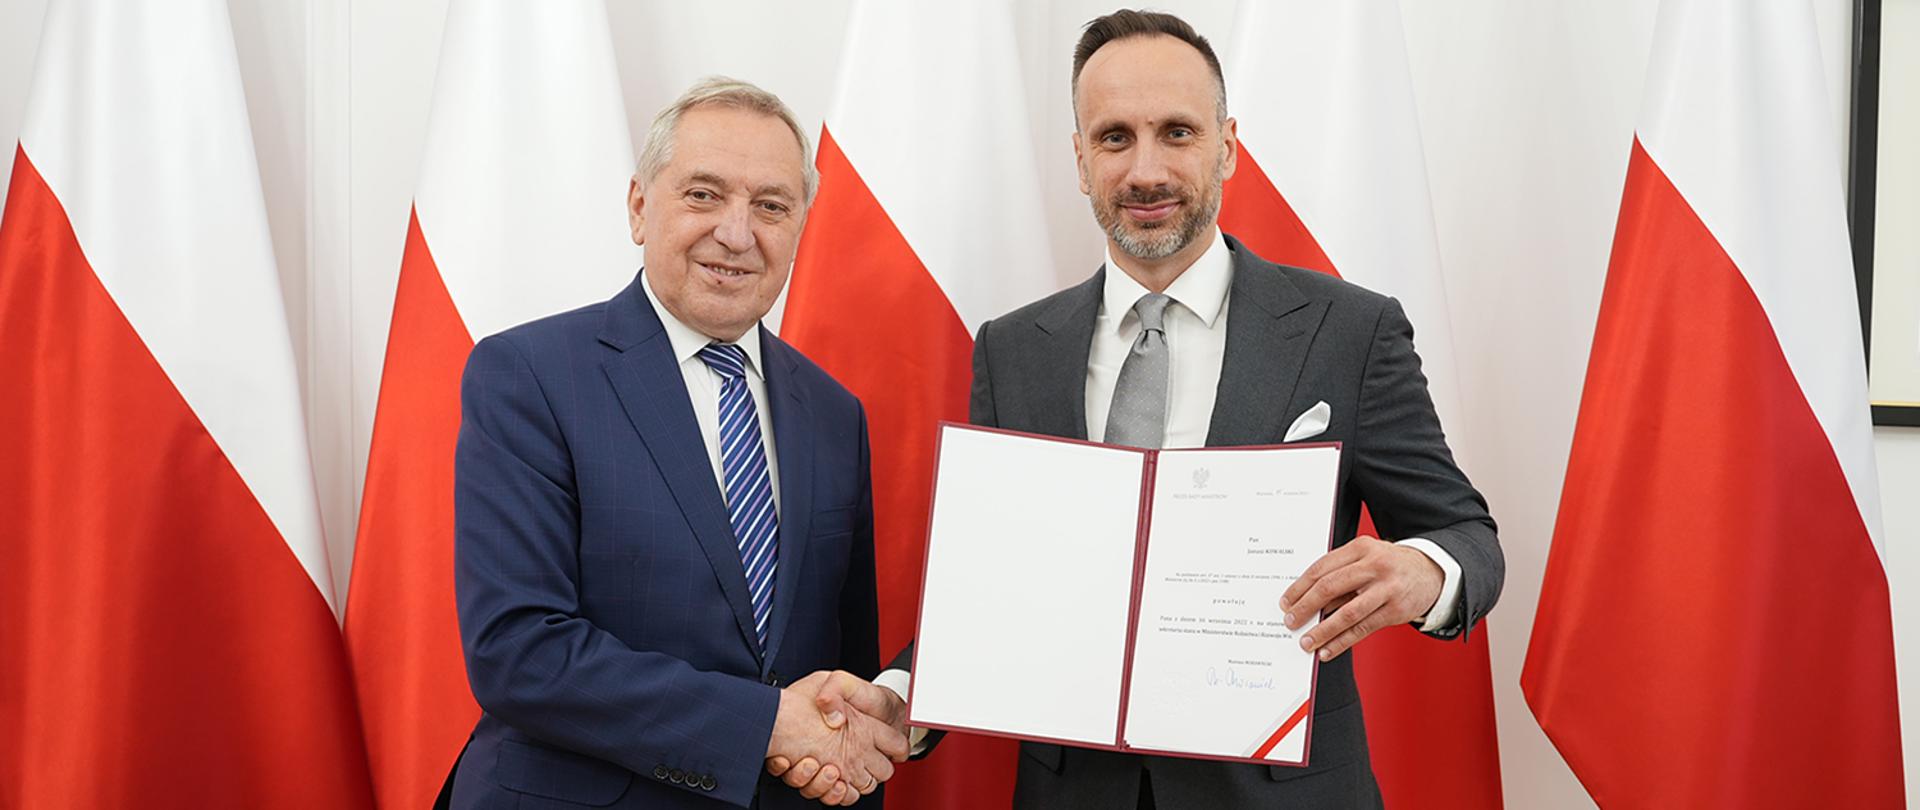 wicepremier Henryk Kowalczyk i sekretarz stanu Janusz Kowalski stojący na tle polskich flag